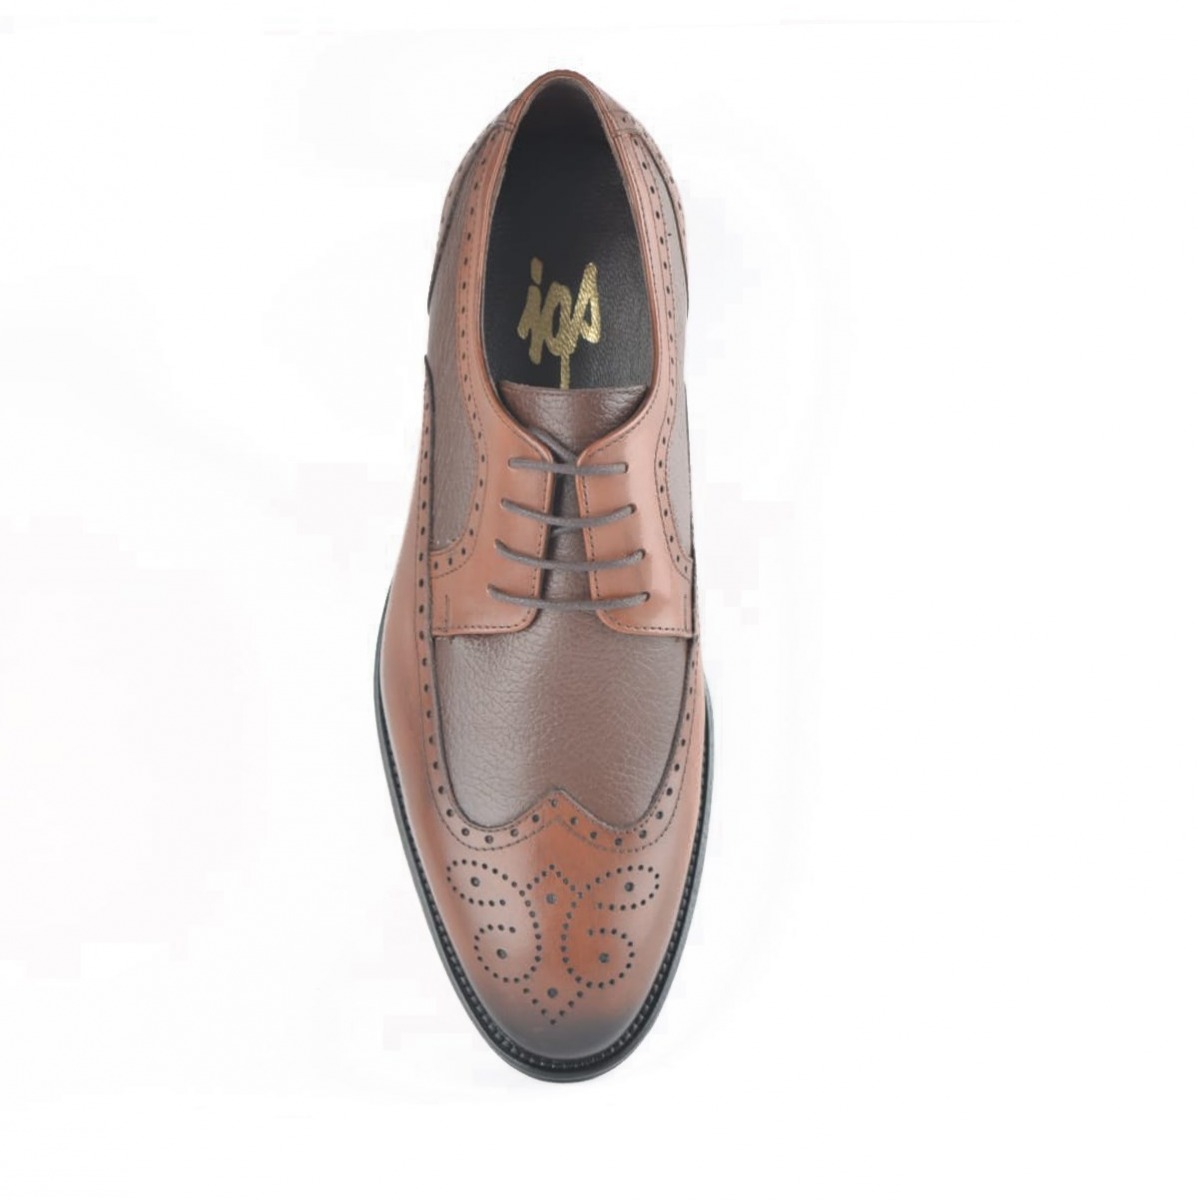 Flo Erkek Deri Klasik Ayakkabı İ20S-191180-4 M 1000 TABA. 6